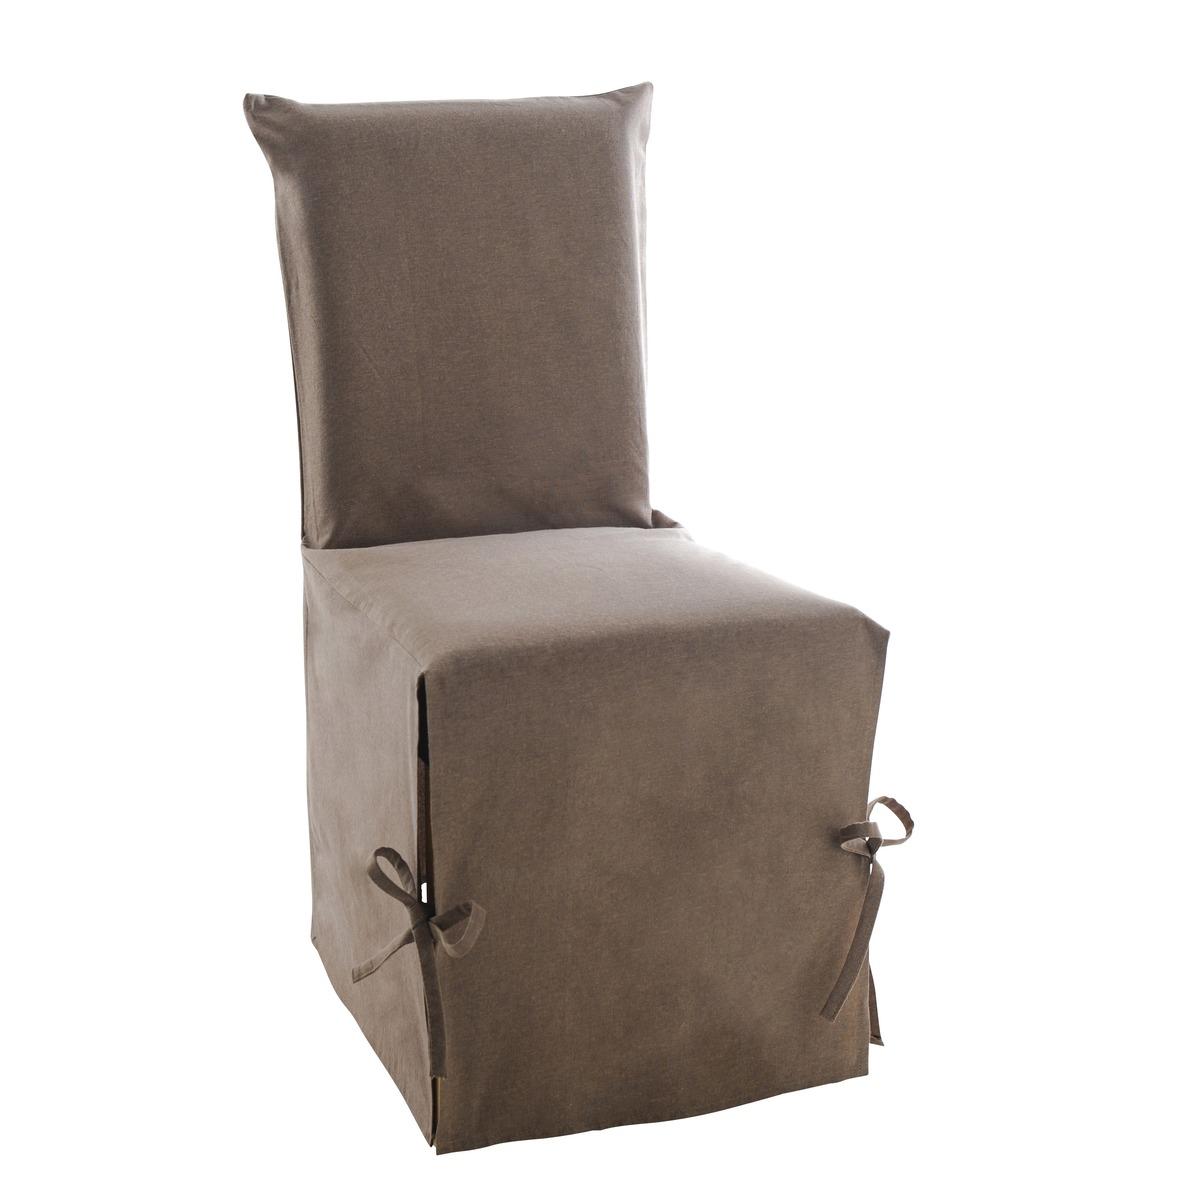 Housse de chaise à rabat effet lin - 45 x 50 cm - Marron taupe